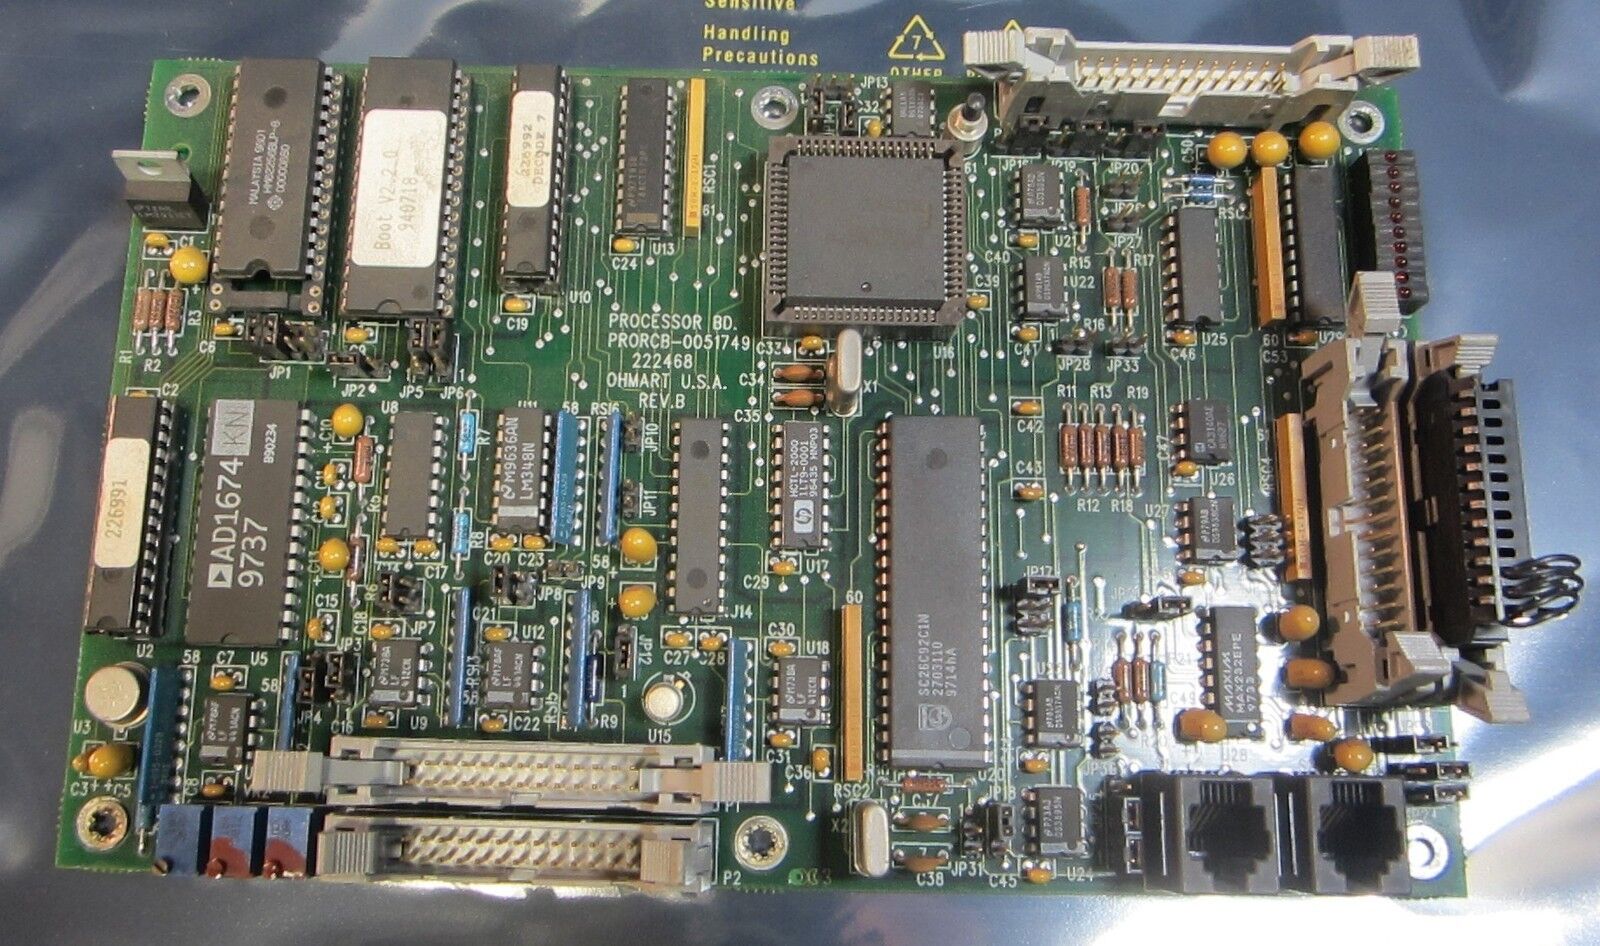 Ohmart Processor Board PRORCB-0051749 222468 Rev. B